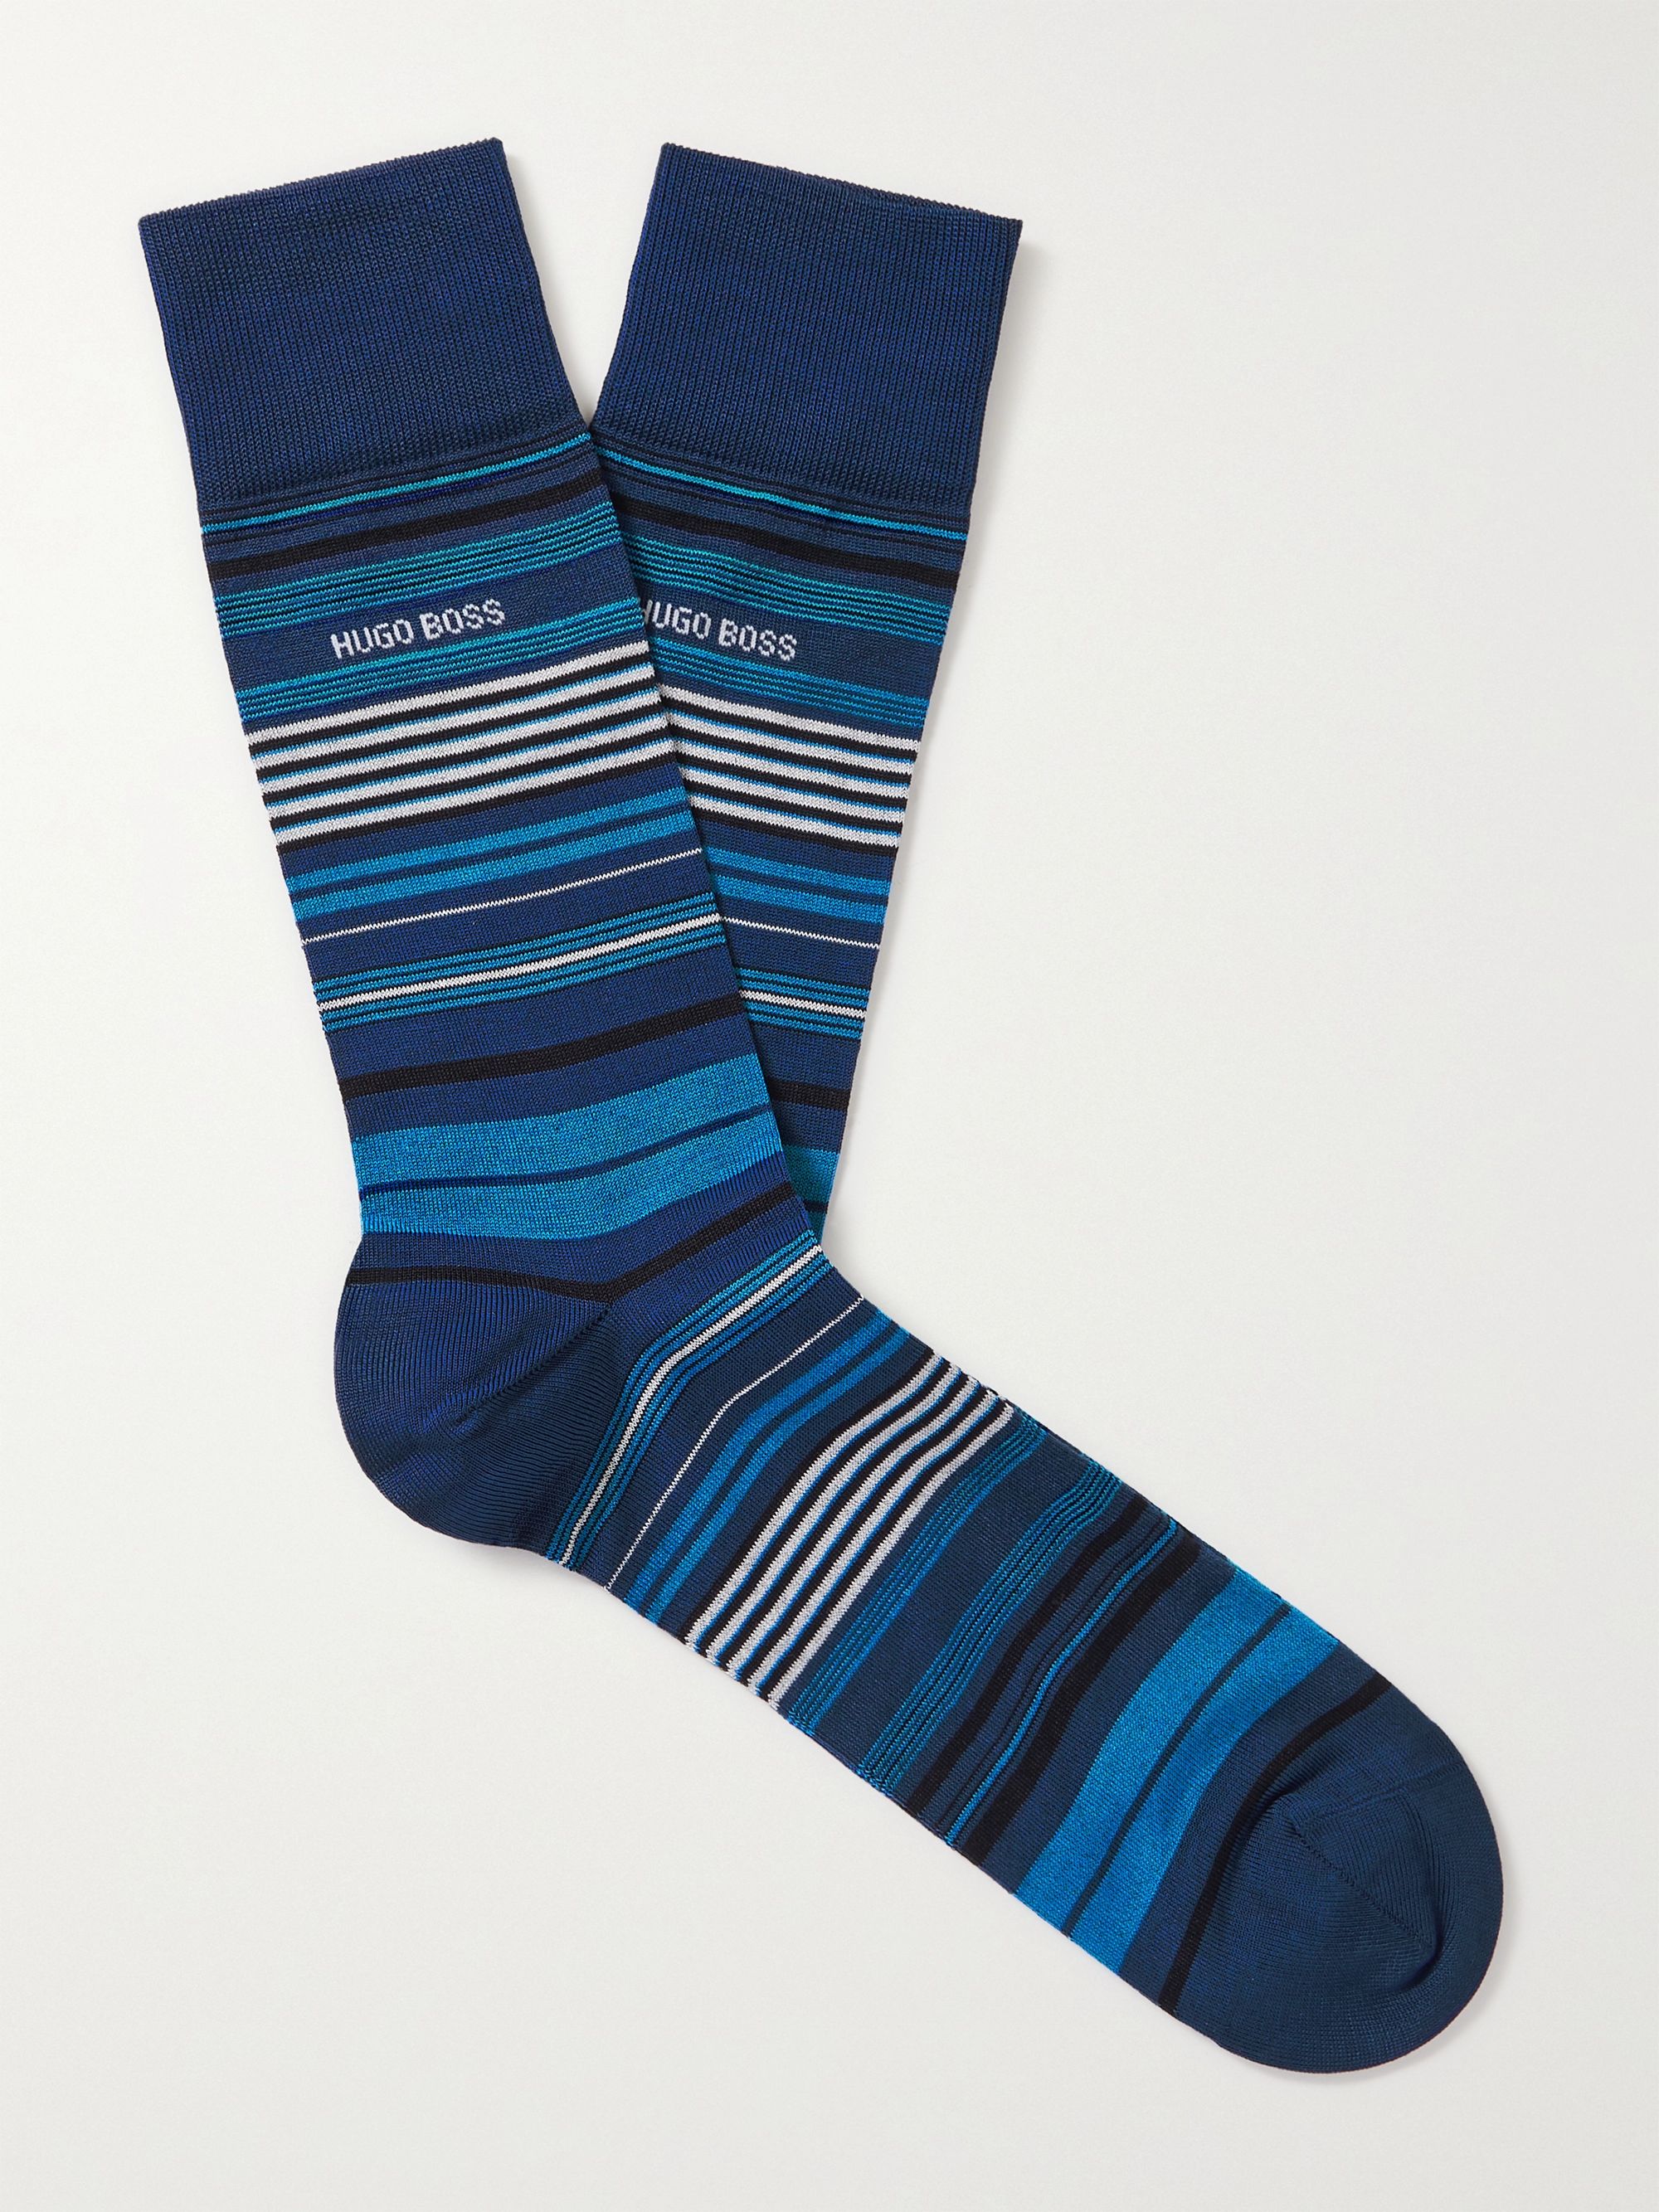 Blue Striped Mercerised Cotton-Blend Socks | HUGO BOSS | MR PORTER